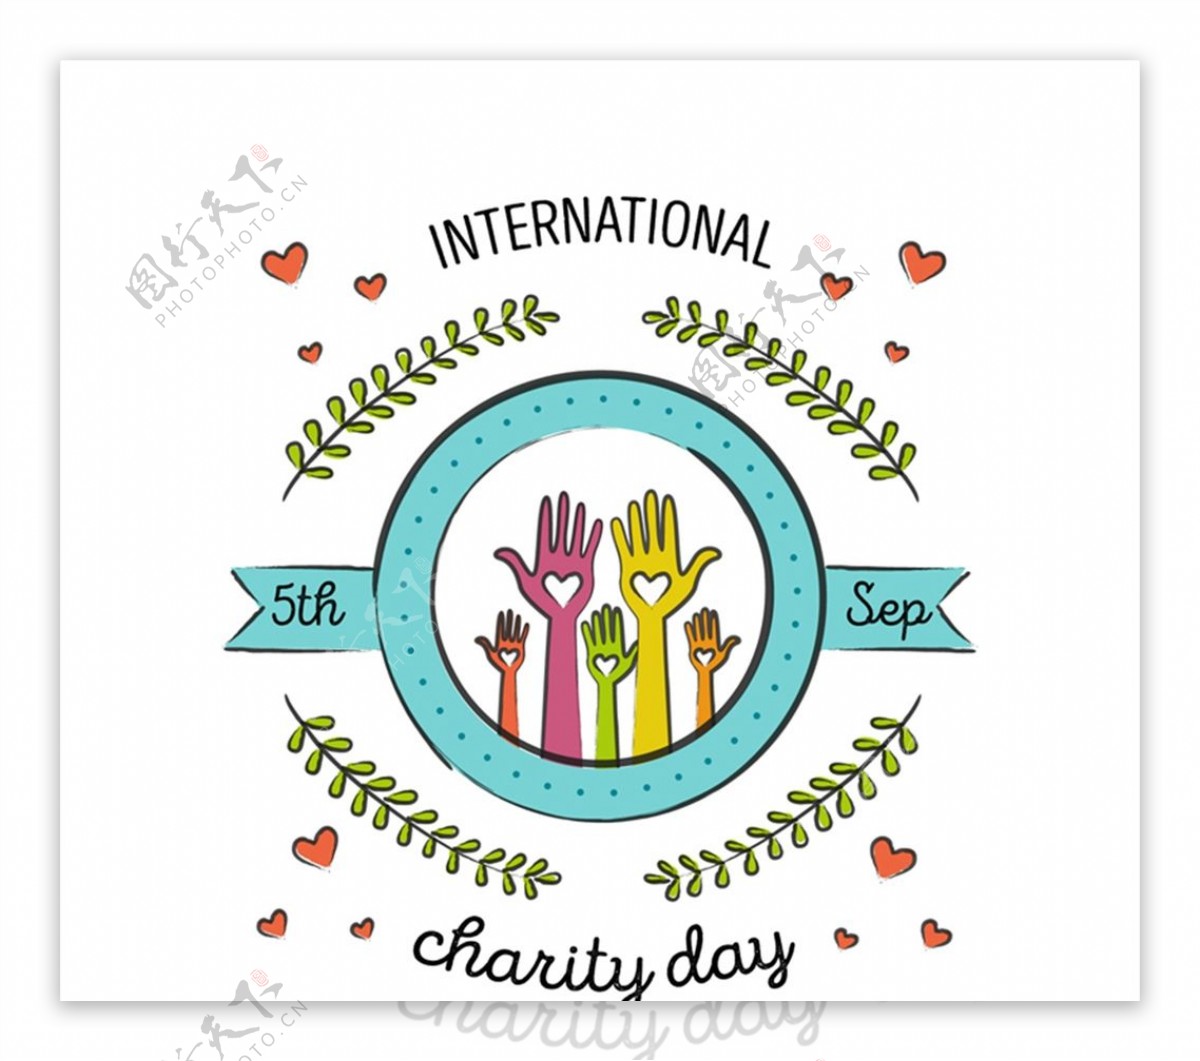 国际慈善日贺卡图片